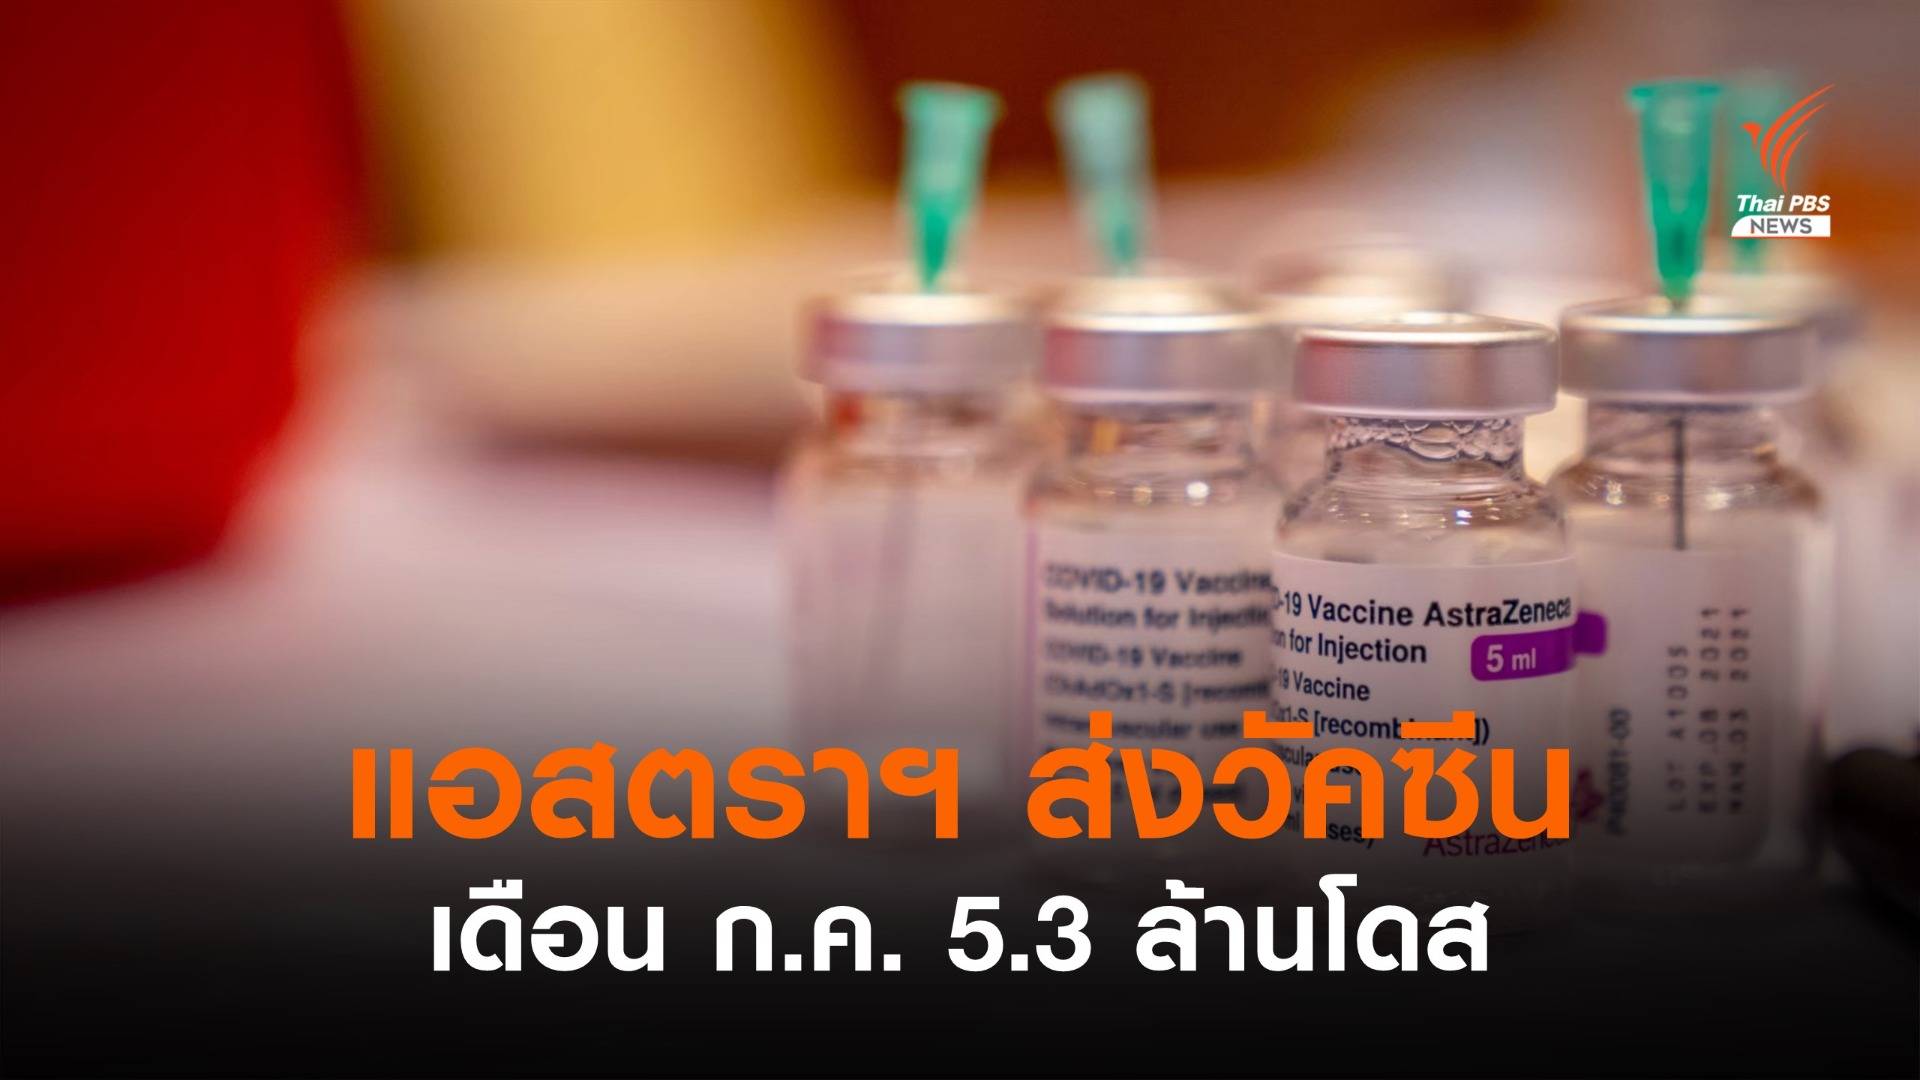 "แอสตราเซเนกา" ส่งมอบวัคซีนให้ไทย เดือน ก.ค. 5.3 ล้านโดส 